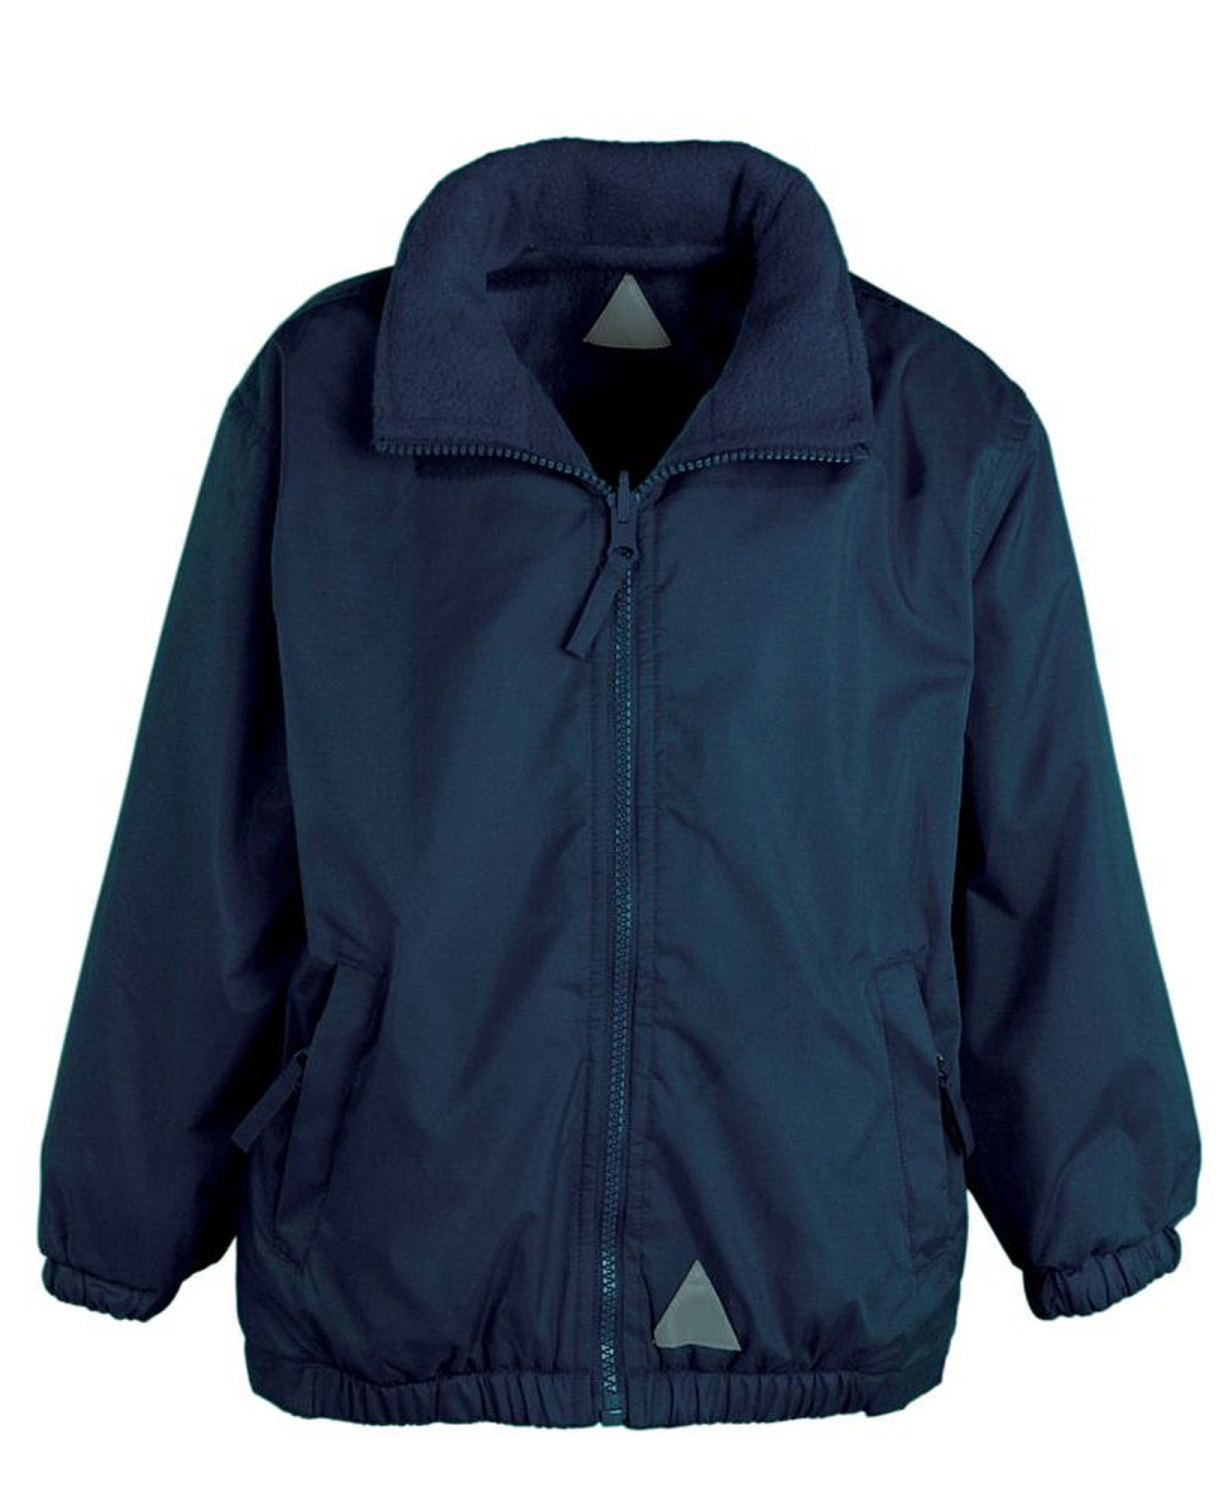 Reversible Waterproof Jacket